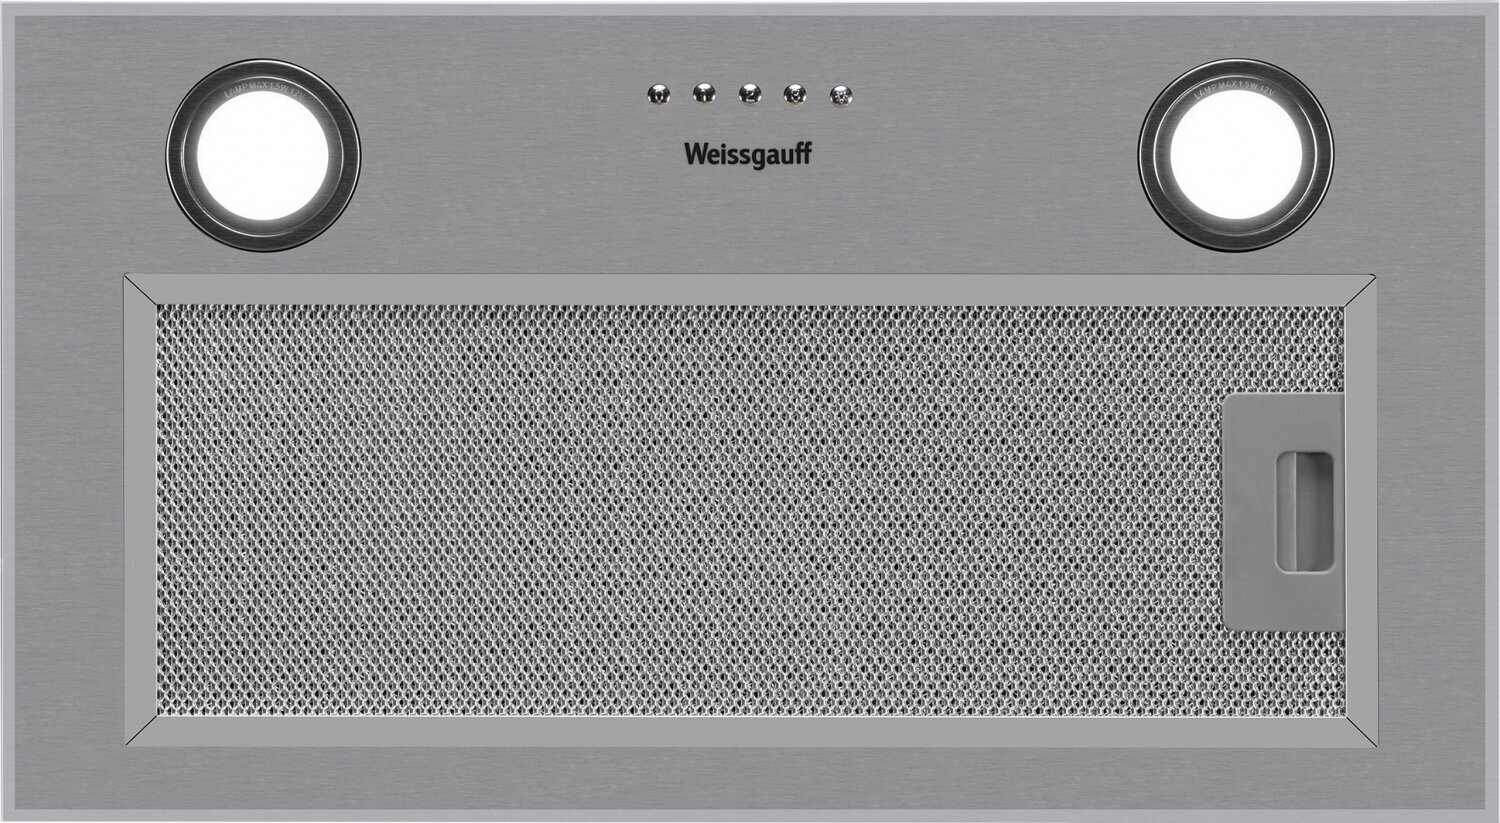 Вытяжка встраиваемая Weissgauff BOX 850 IX нержавеющая сталь управление: кнопочное - фото №2